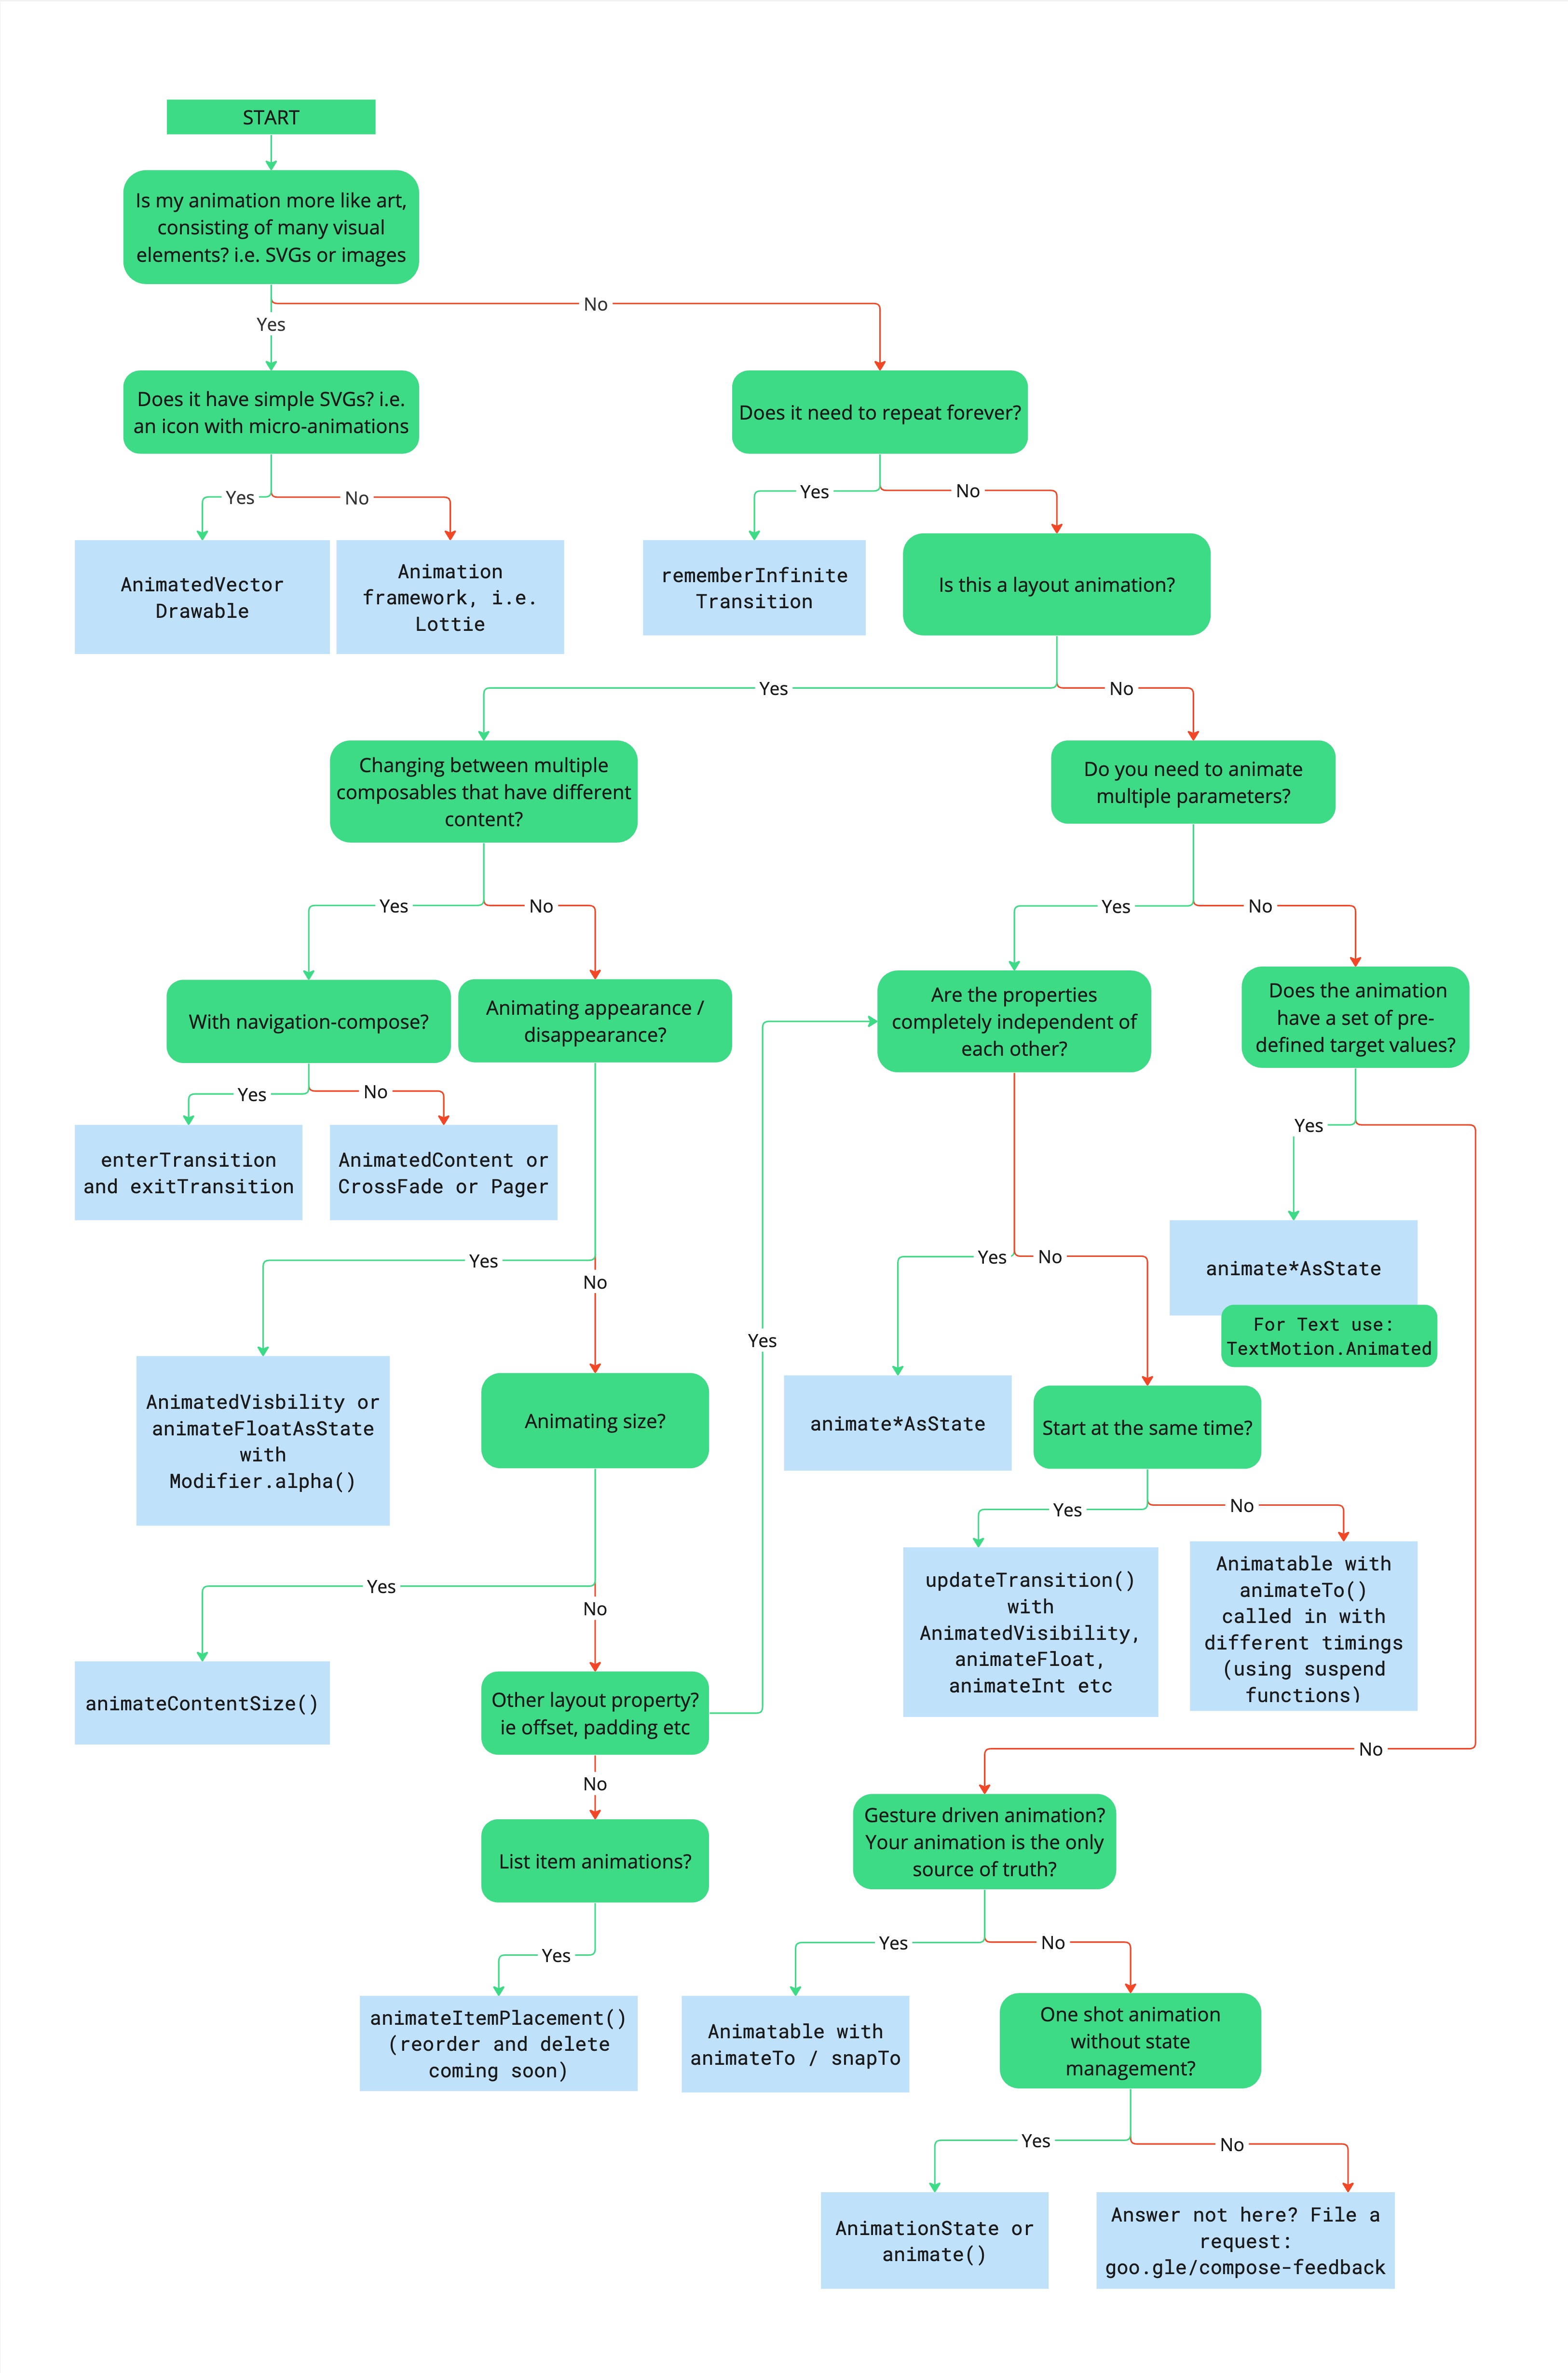 這張流程圖展示了用於選擇適當動畫 API 的決策樹狀圖